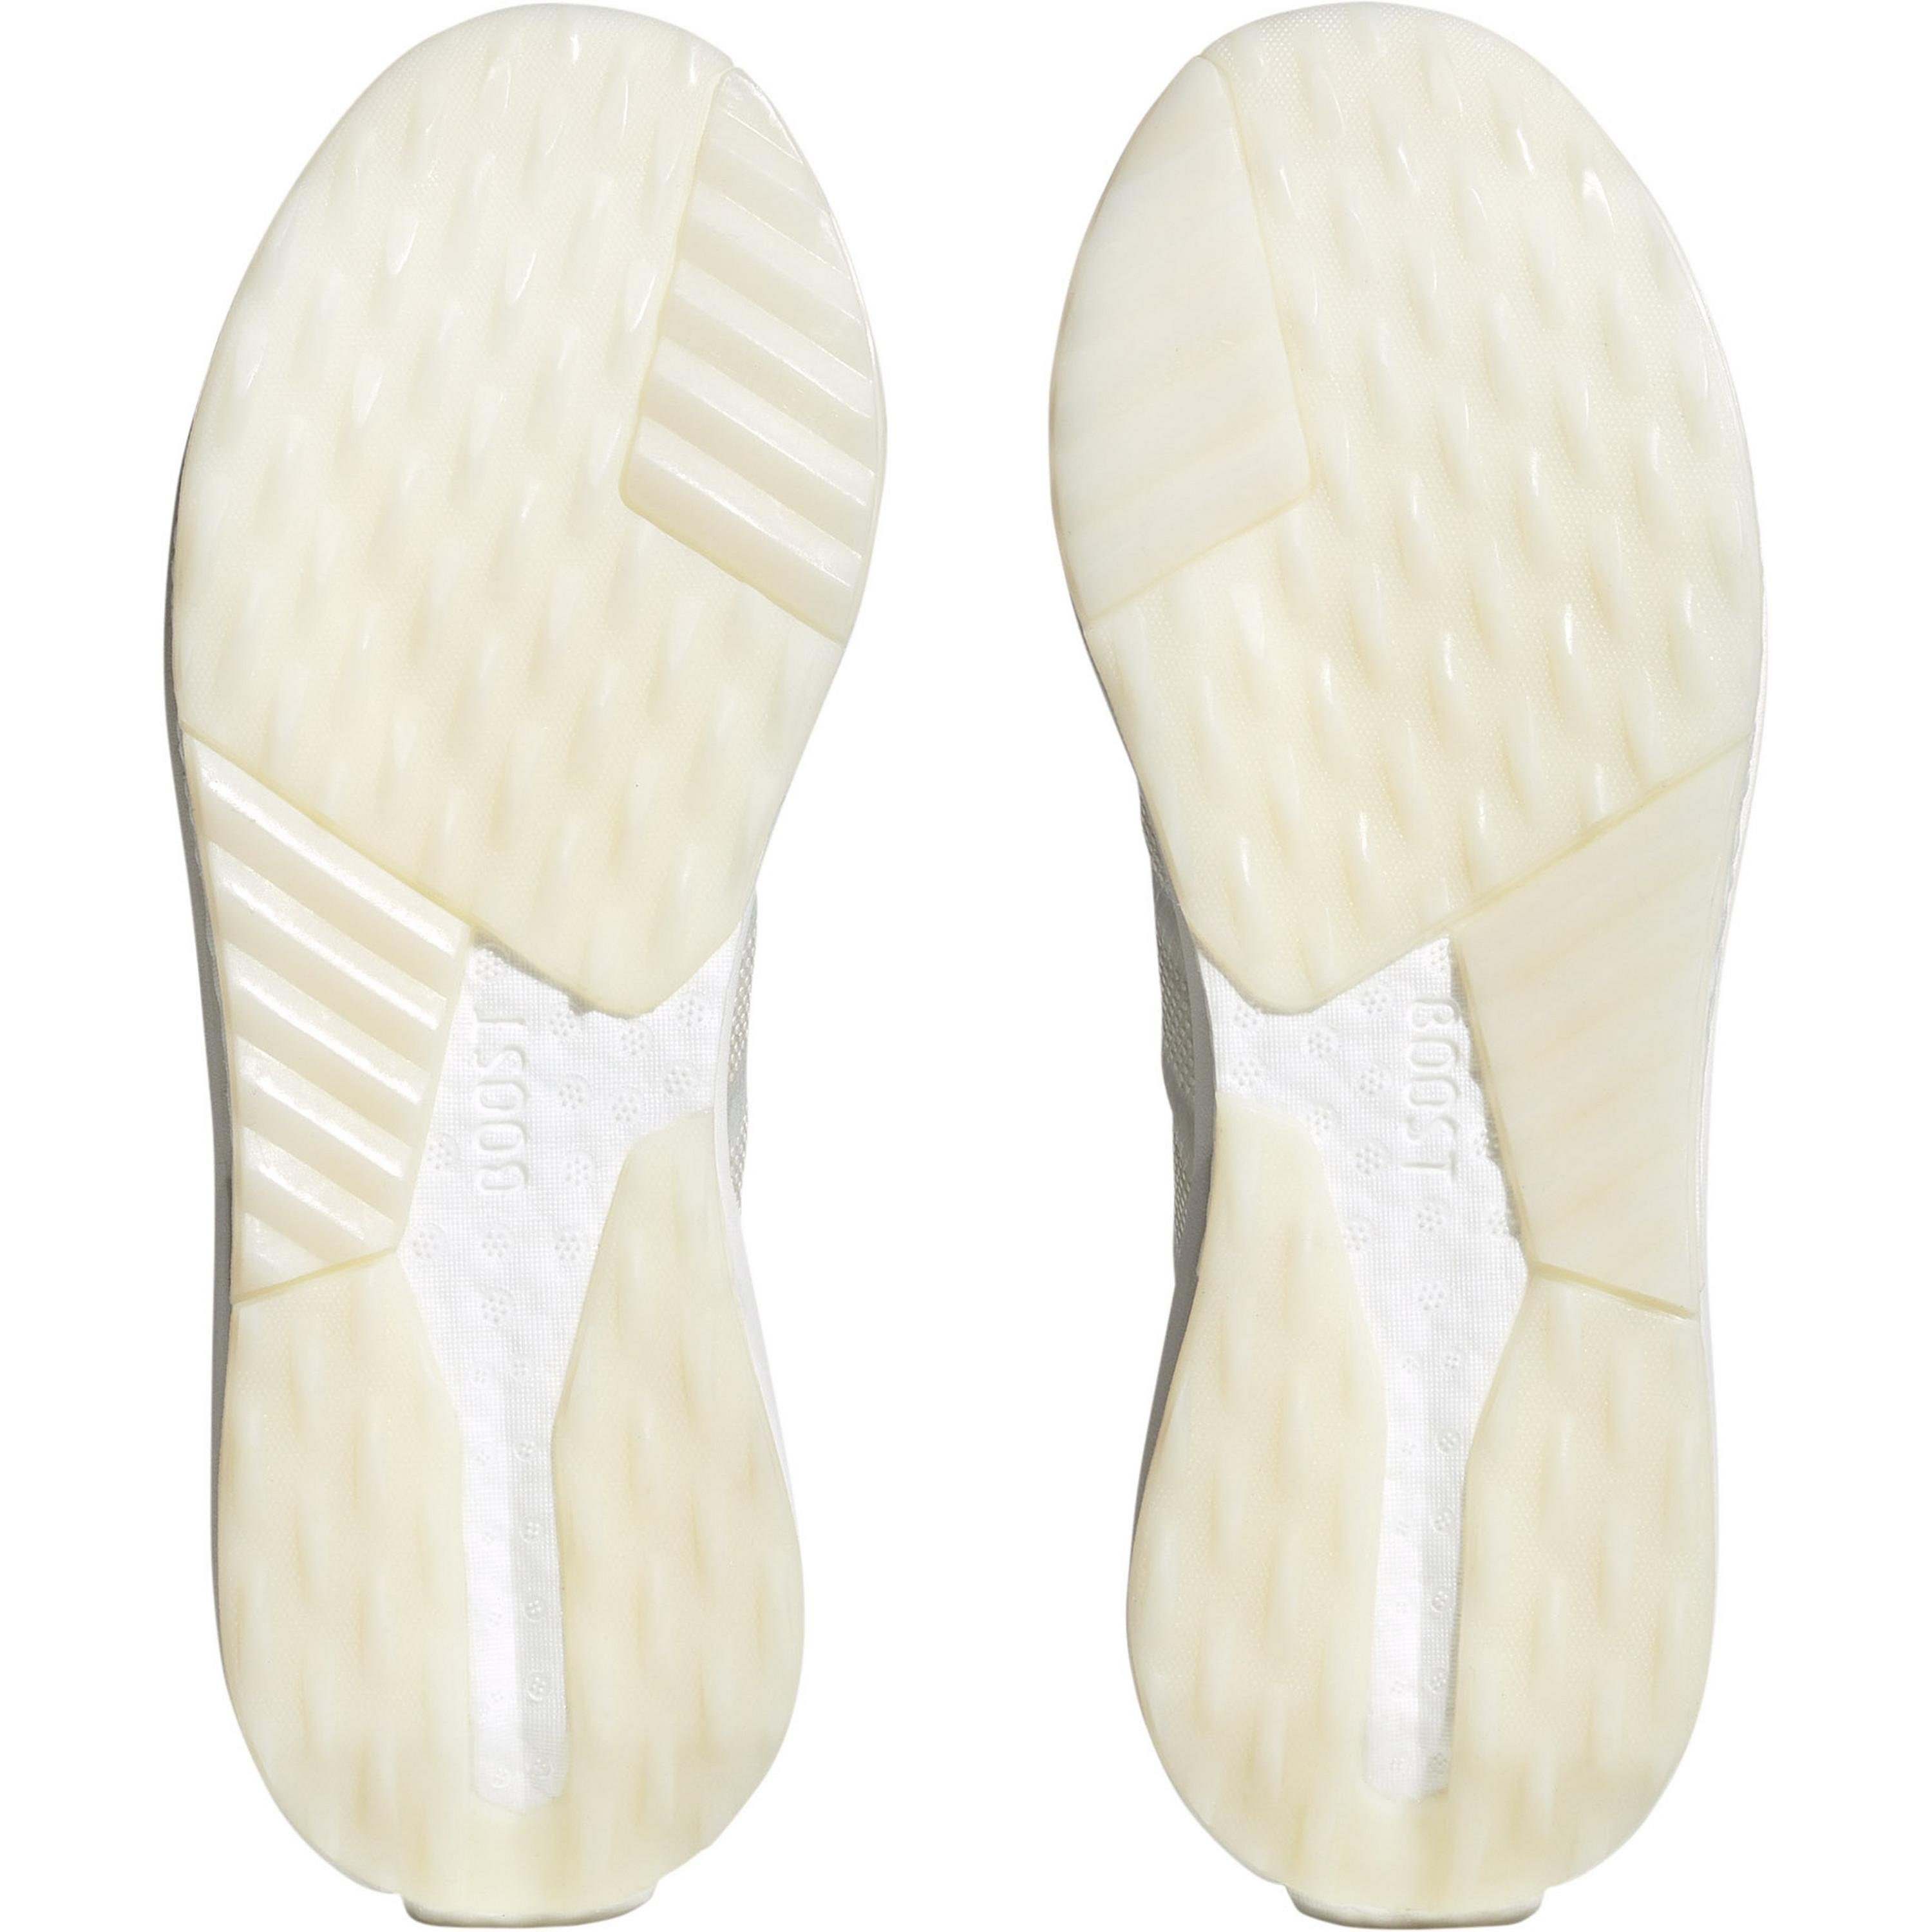 ftwr Sportswear adidas white Avryn met.-crystal white-zero Sneaker